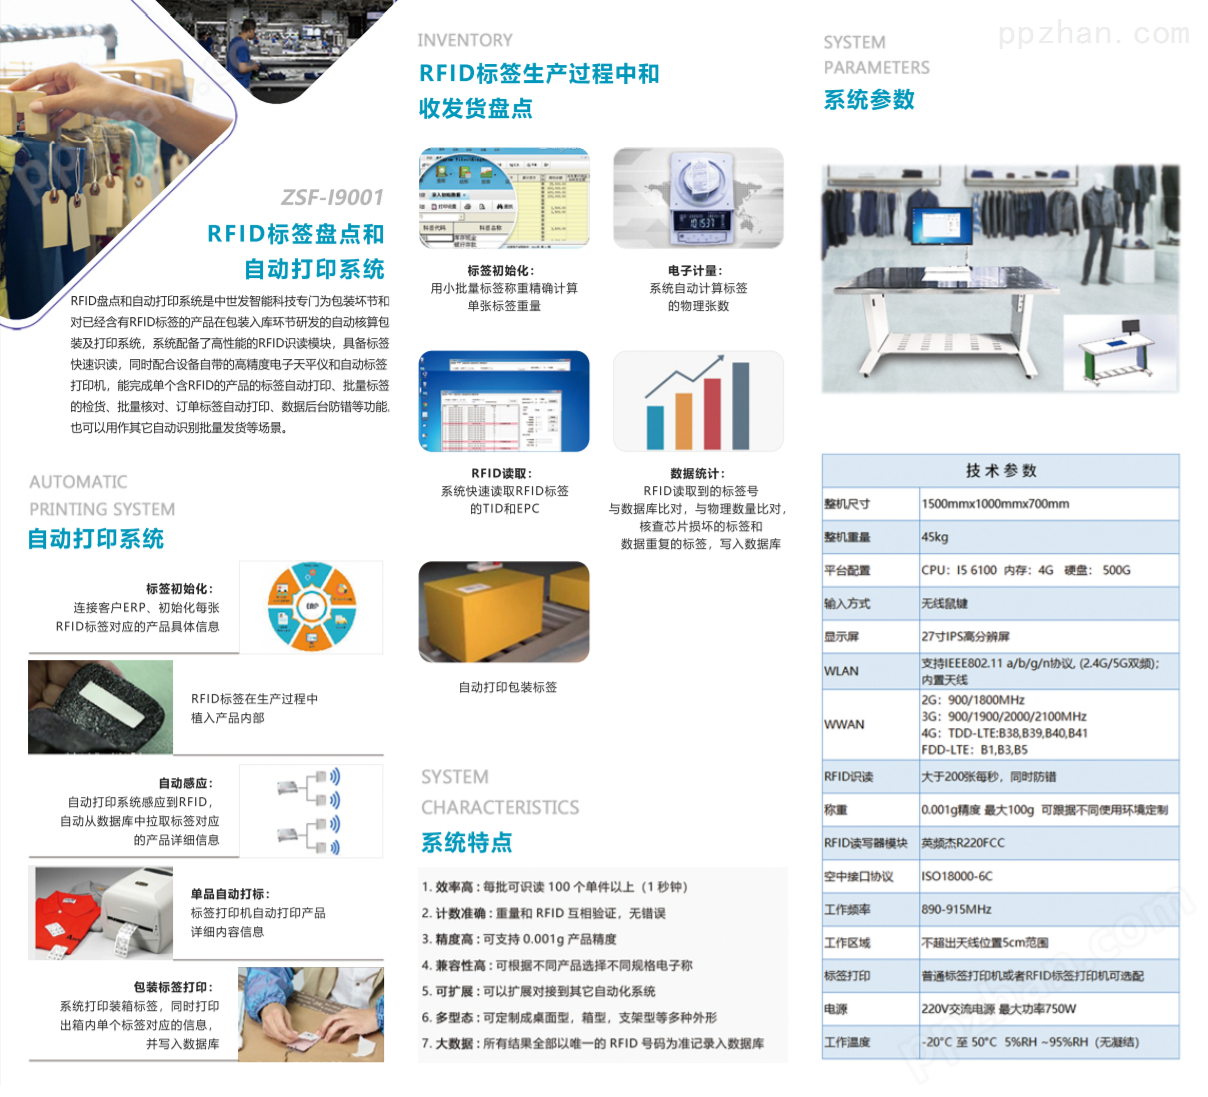 ZSF-I9001 RFID标签盘点和自动打印系统